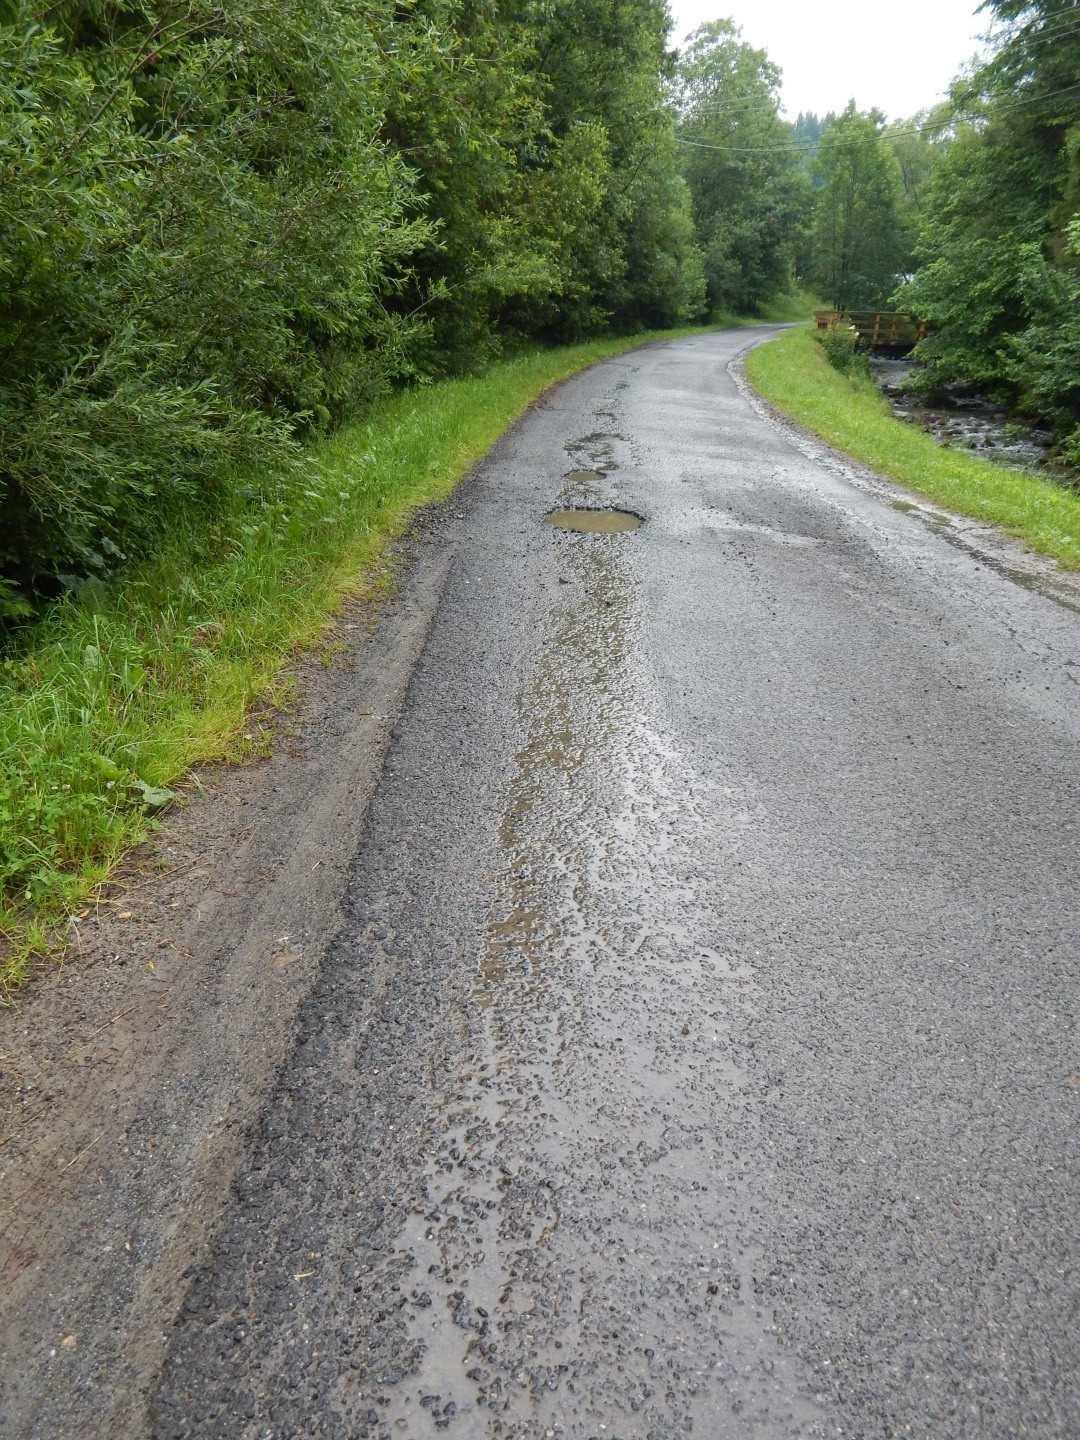 Na zdjęciu znajduje się asfaltowa droga z dziurami wypełnionymi wodą w lewej części drogi. Po prawej stronie płynie strumyk i widać drewniany most w oddali. Wokół drogi rośnie trawa i drzewa.